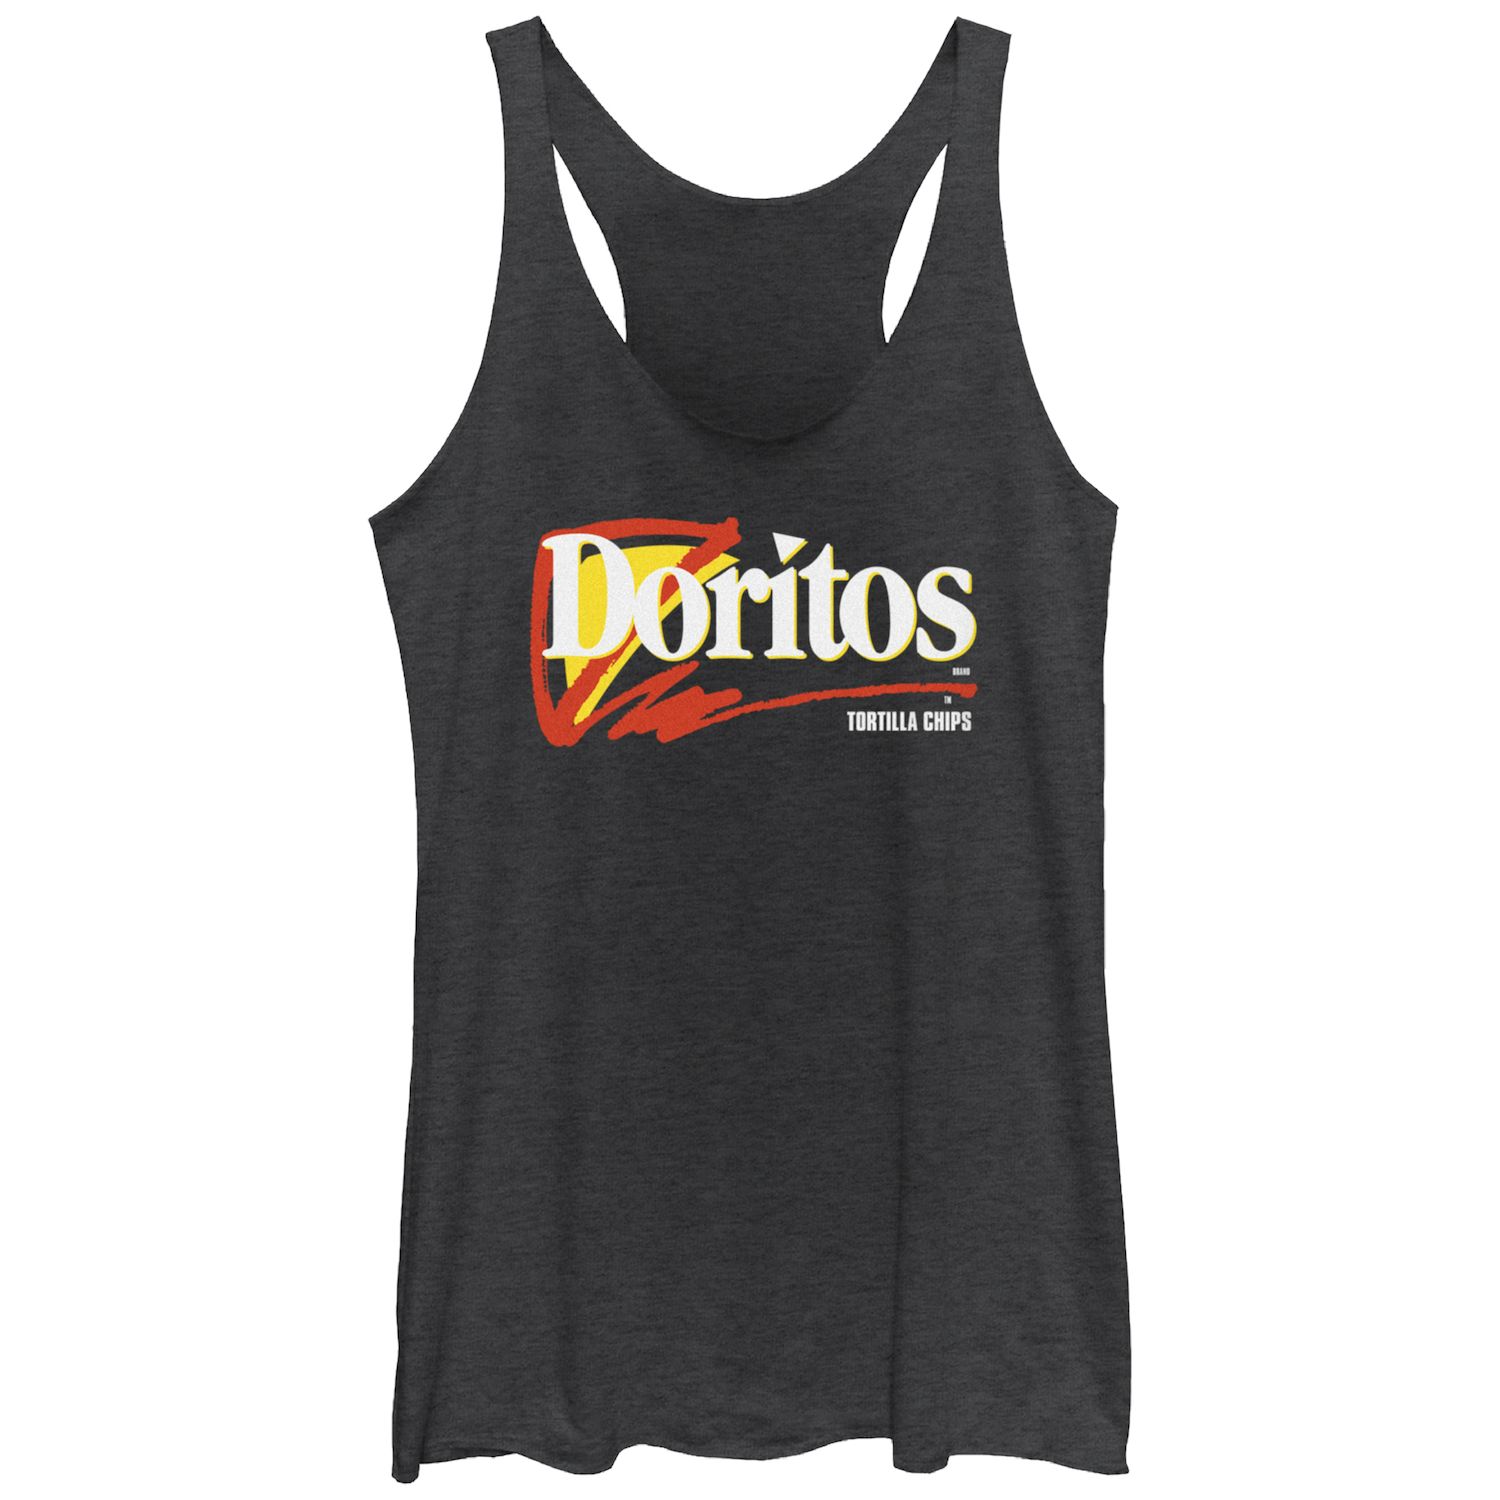 Майка-борцовка с логотипом Doritos Tortilla Chips для юниоров Doritos